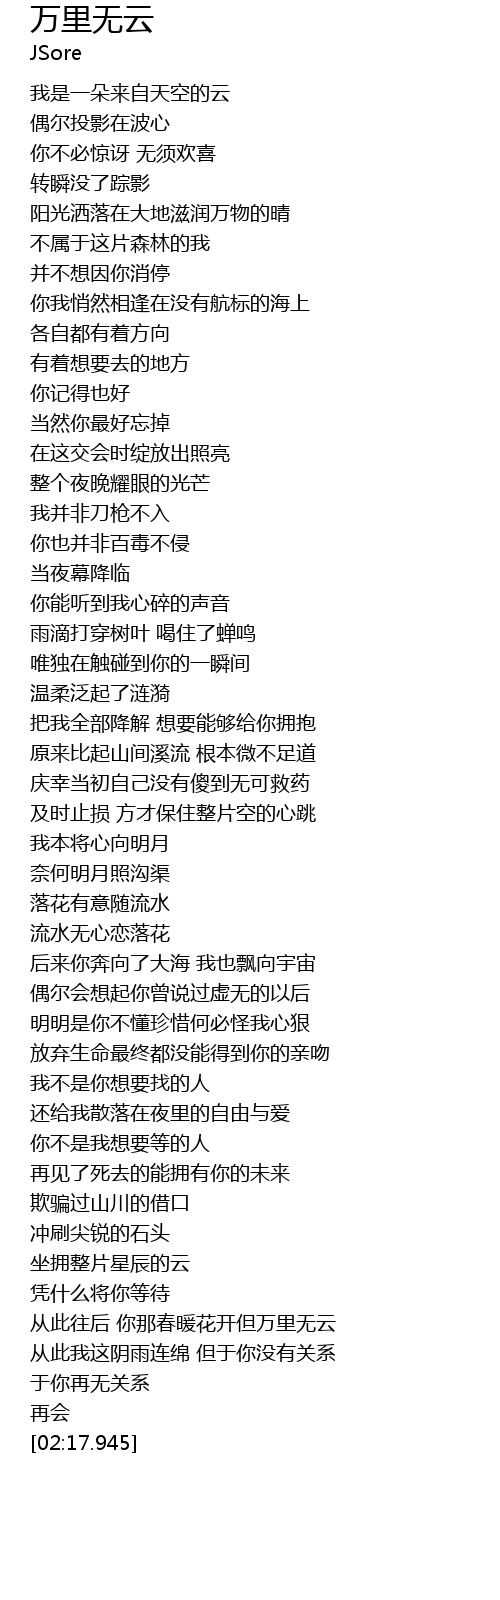 万里无云 wan li wu yun Lyrics